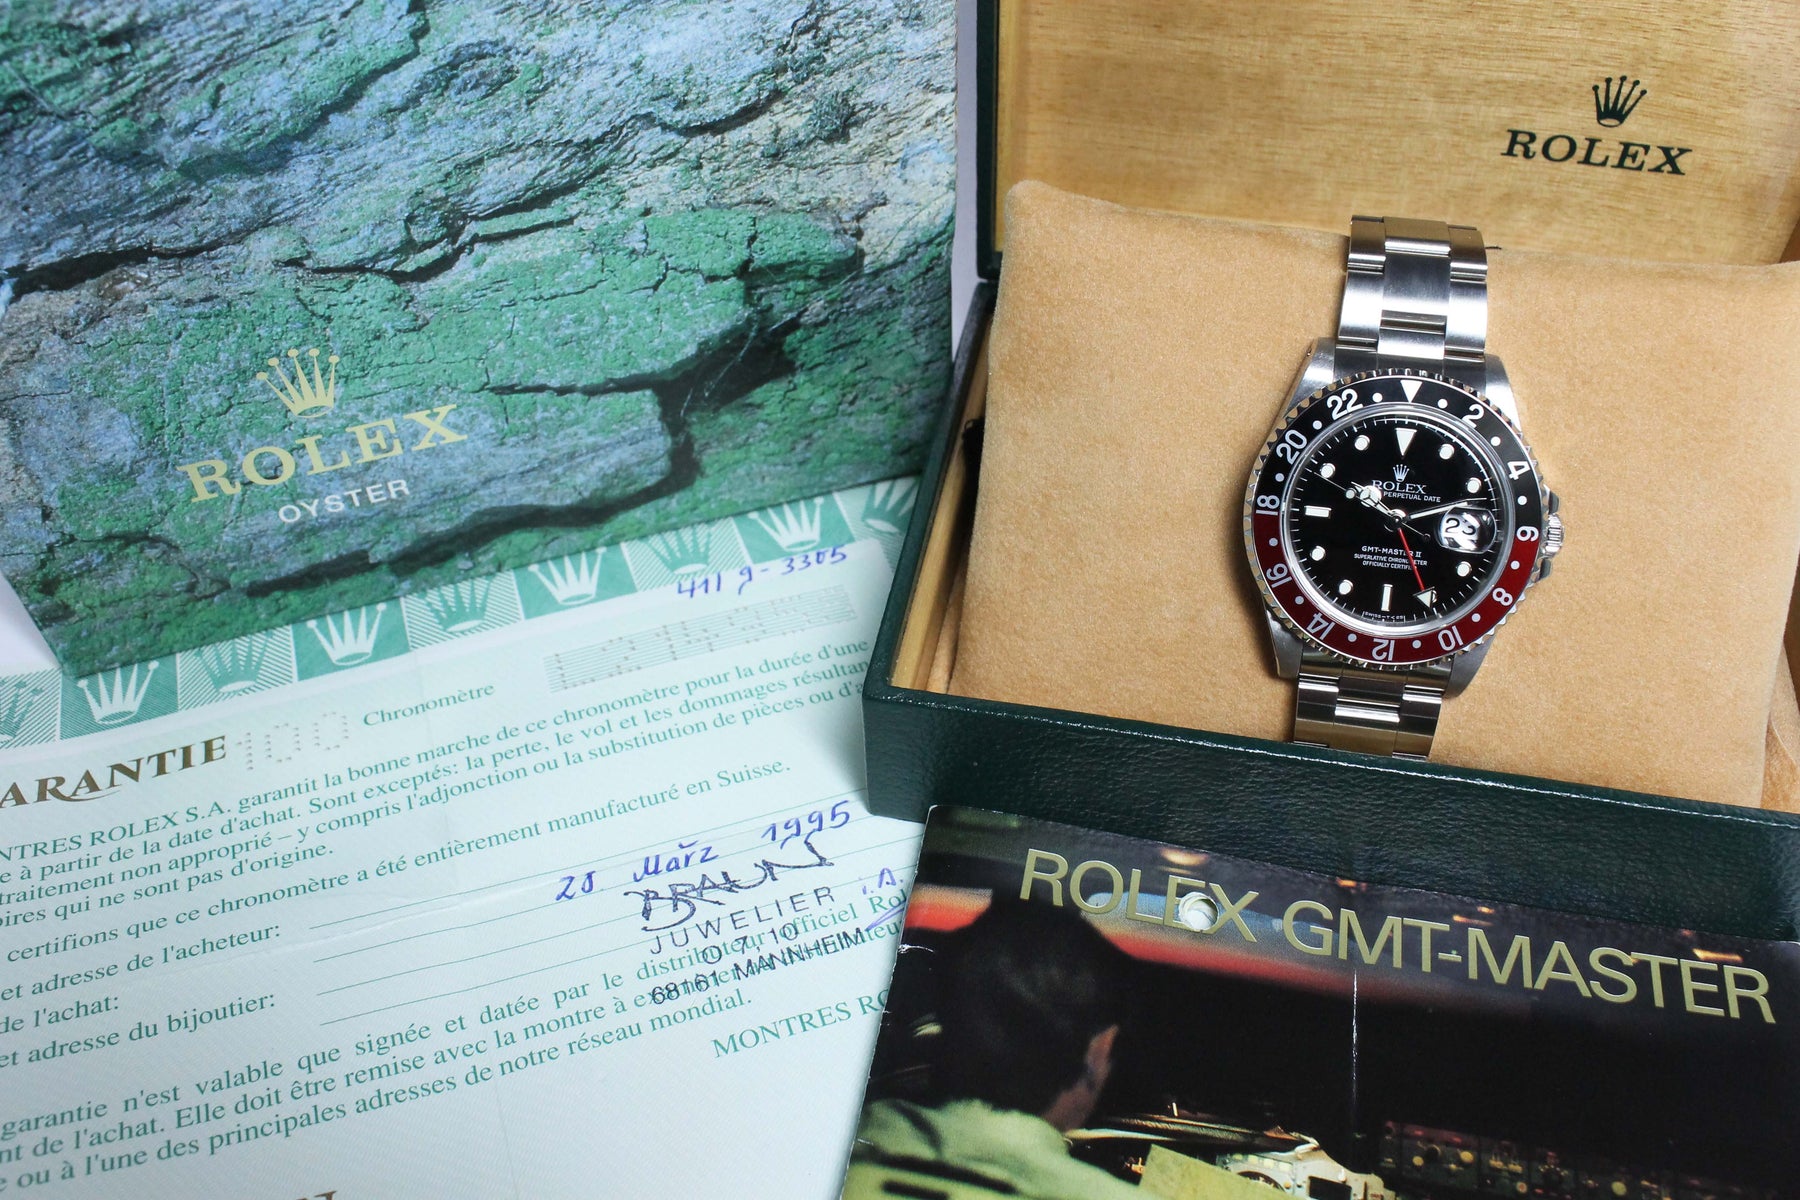 1989 Rolex GMT Master II 1st Series NOS Ref. 16710 (Full Set)